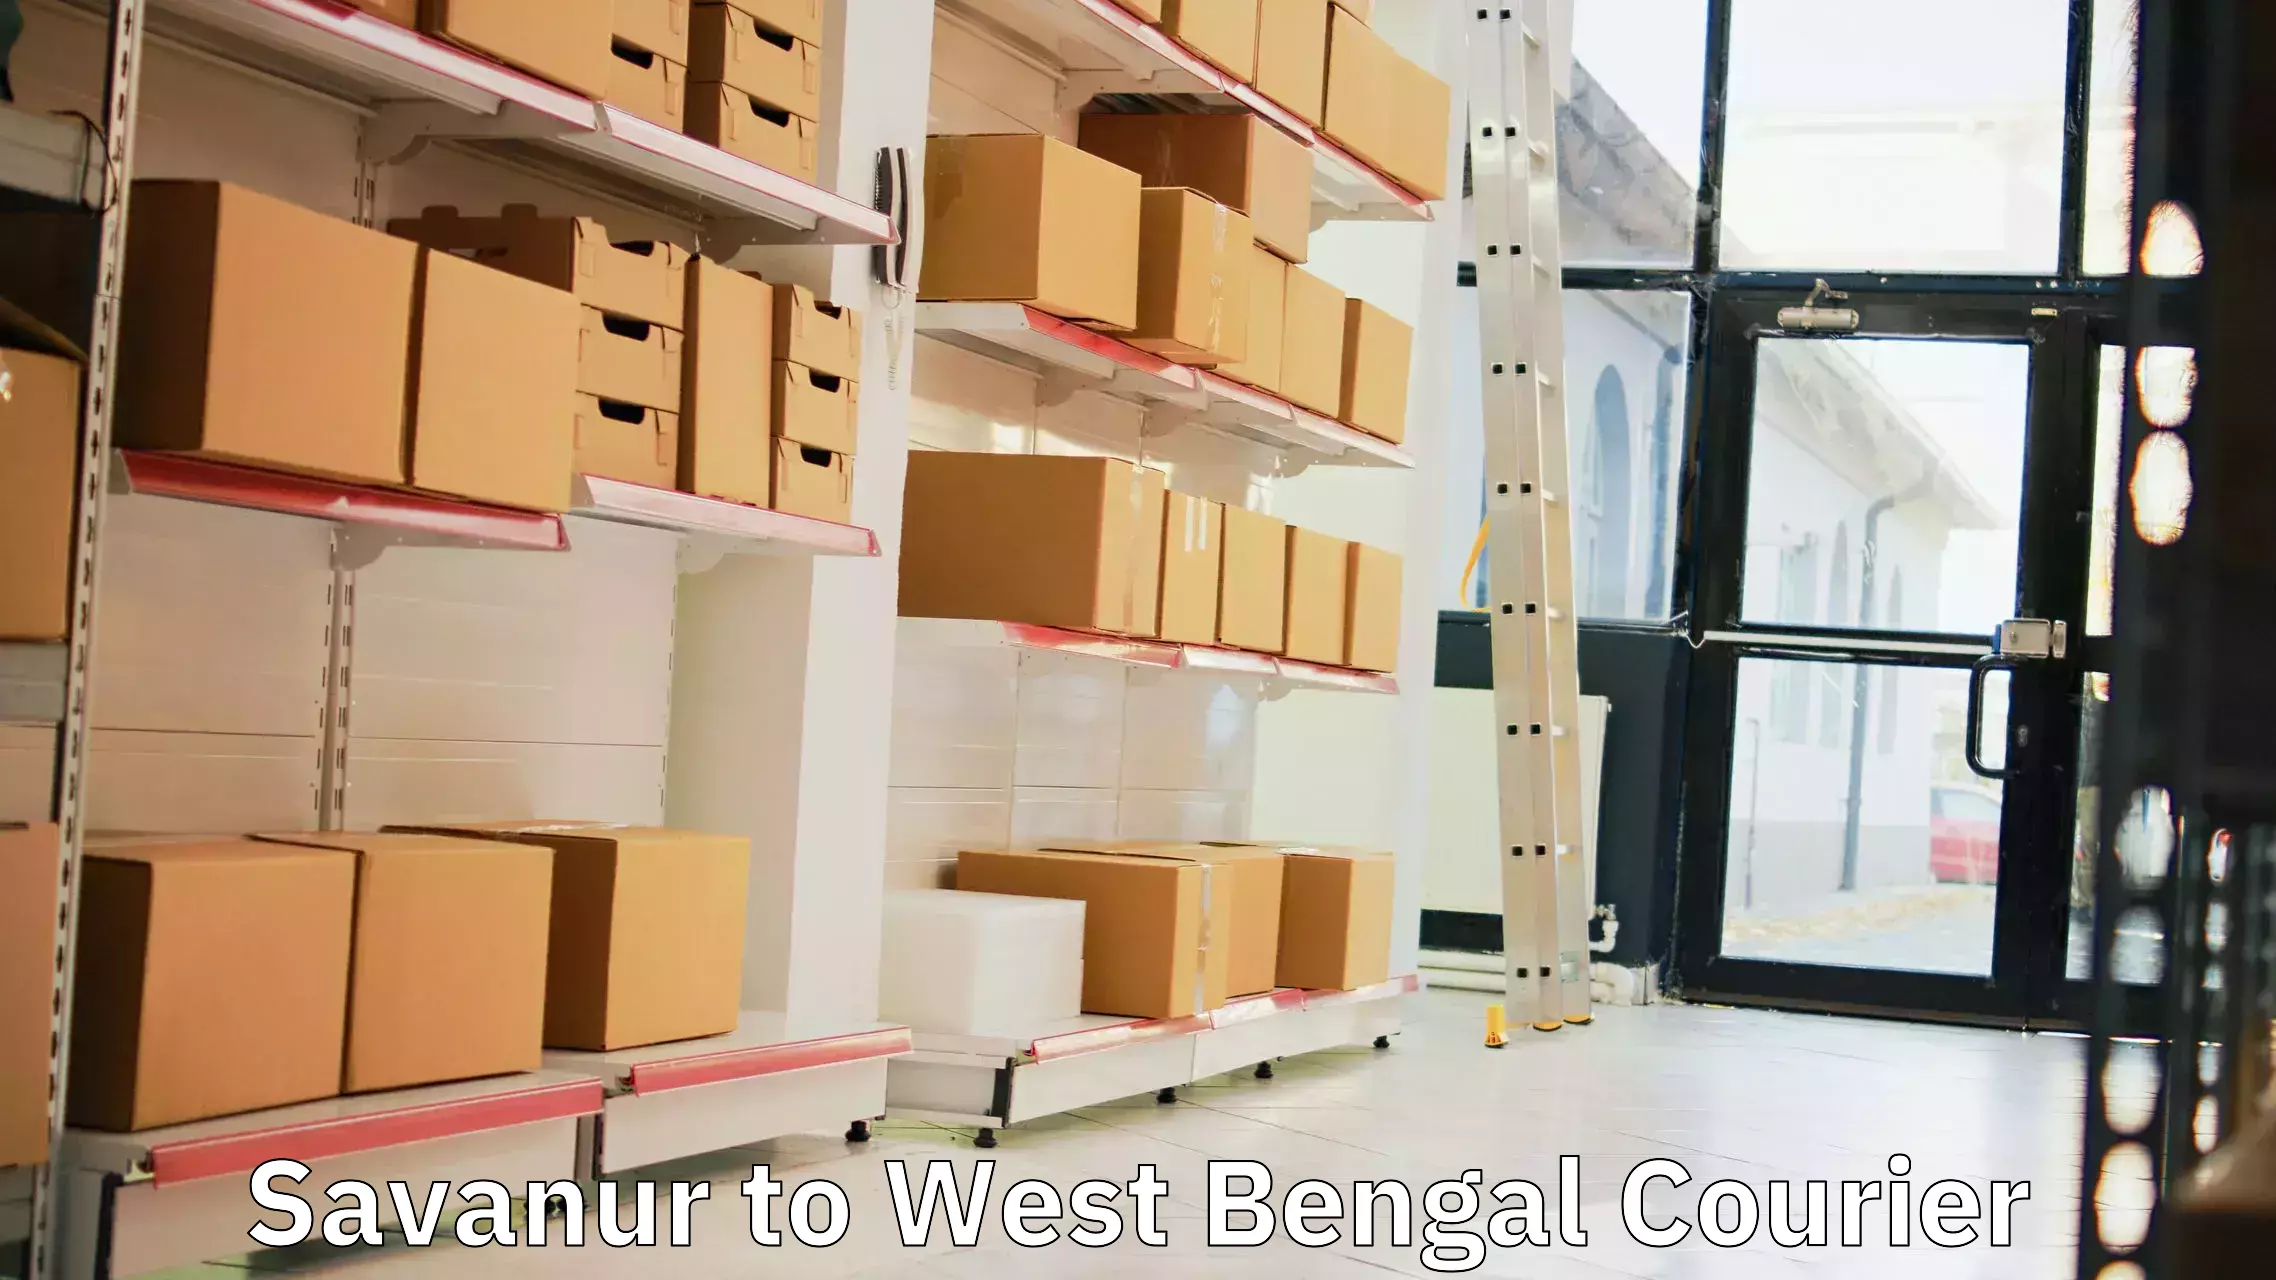 Customer-oriented courier services in Savanur to Basirhat